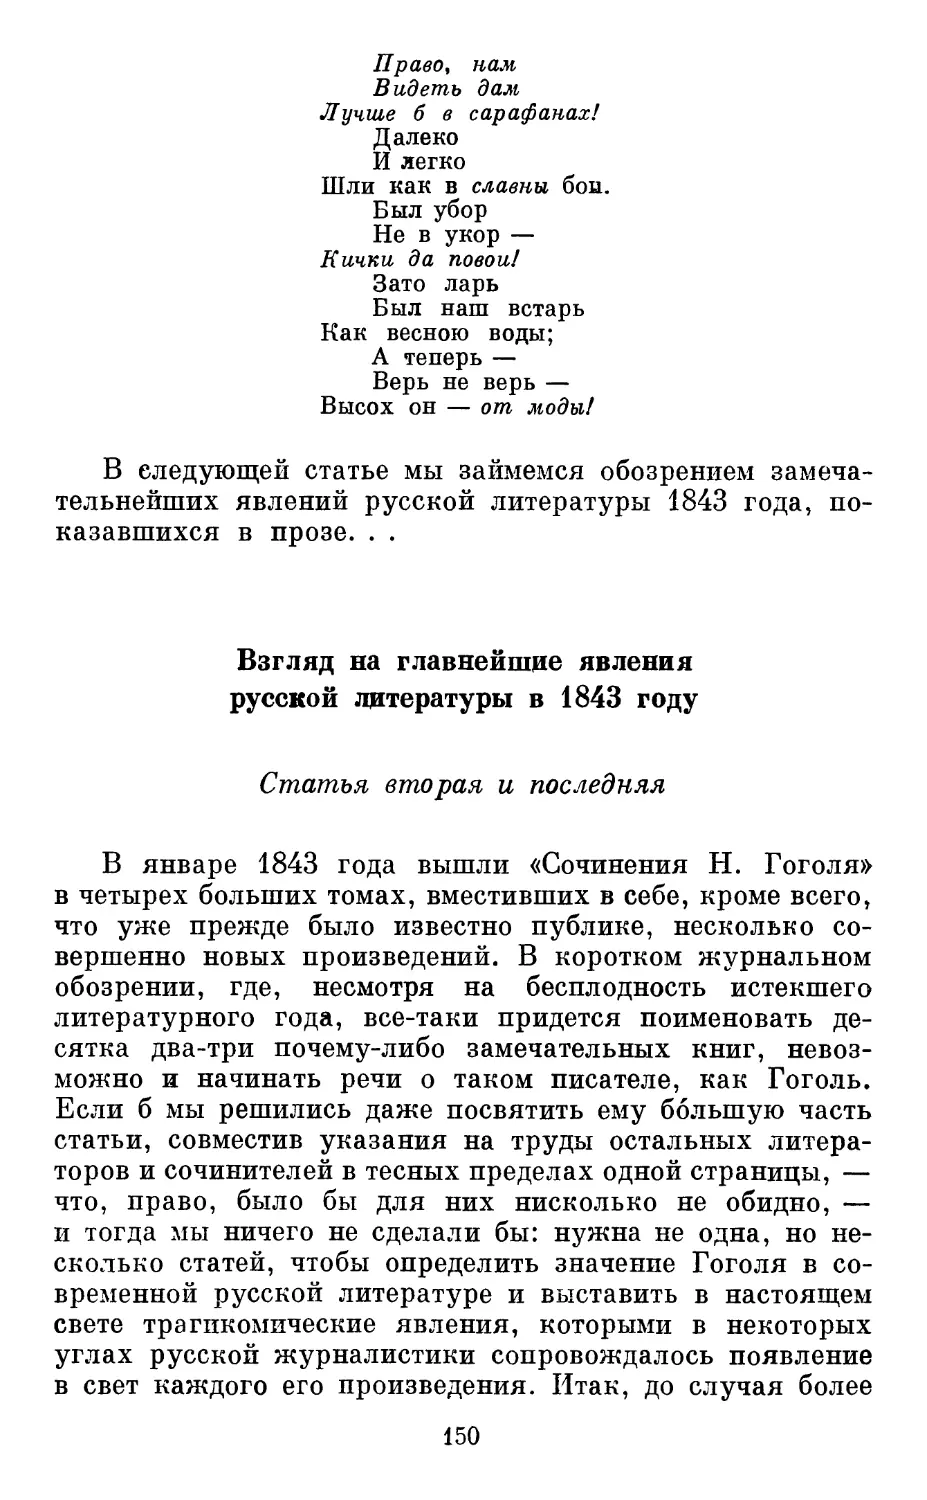 Взгляд на главнейшие явления русской литературы в 1843 году. Статья вторая и последняя